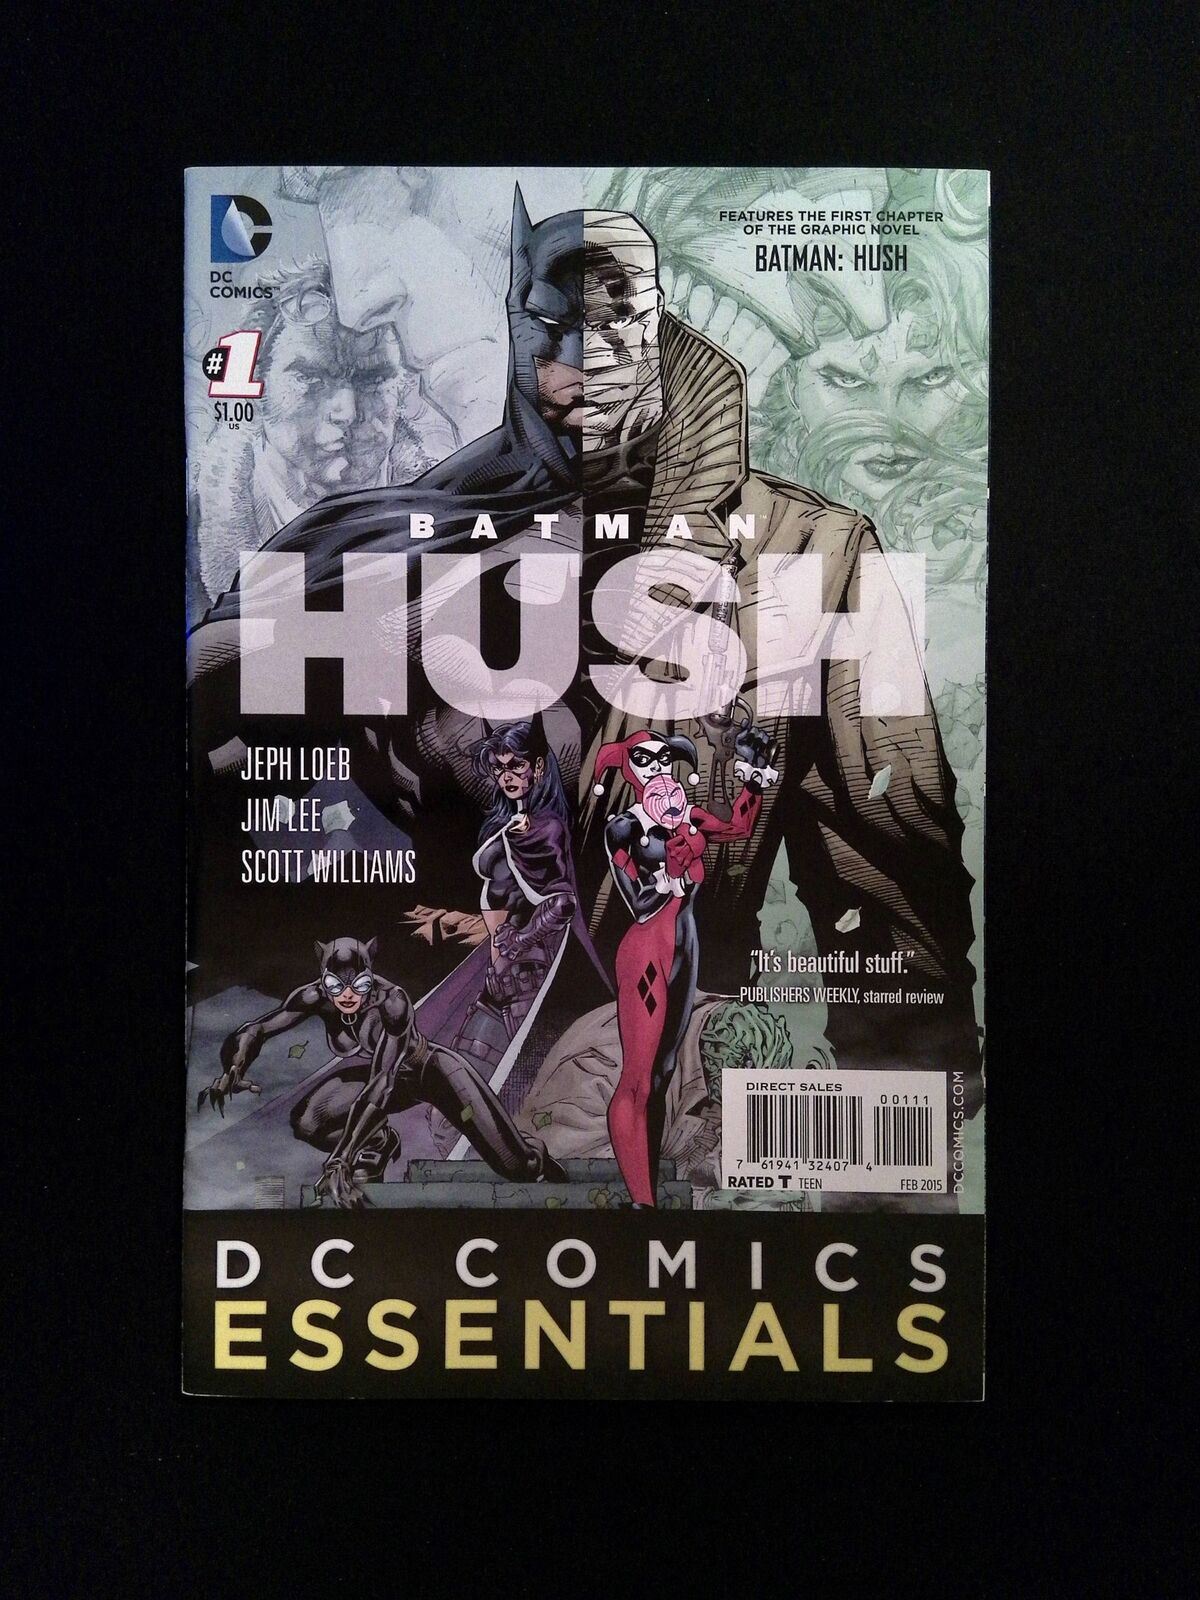 DC Comics  Essentials  Batman  Hush #1  DC Comics 2015 NM